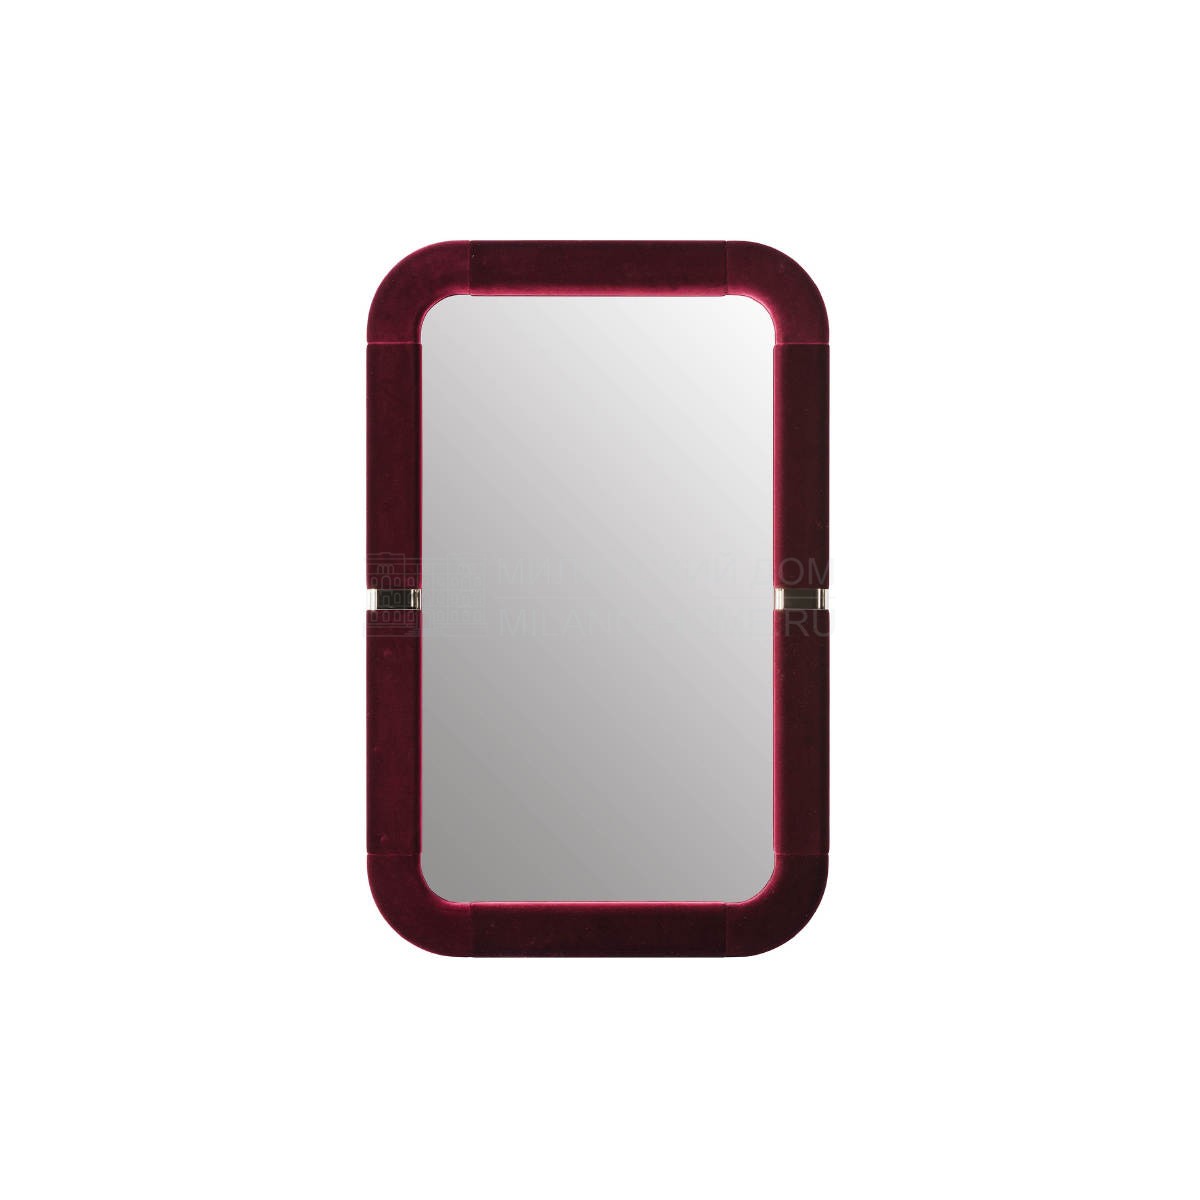 Зеркало настенное Madison mirror due из Италии фабрики TURRI